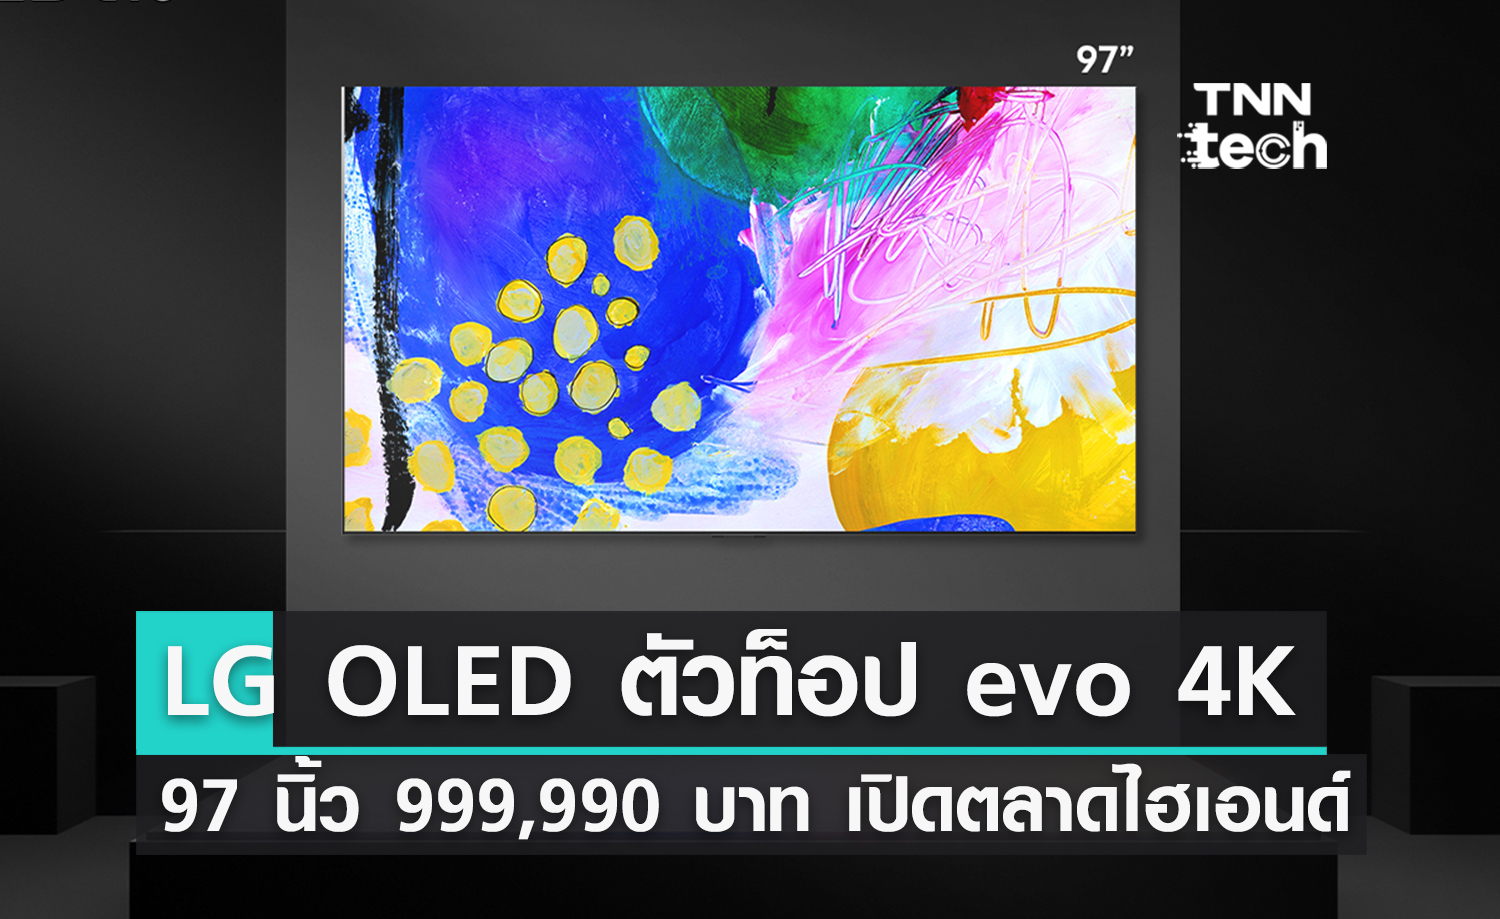 ฉลอง 10 ปี LG OLED TV ! ส่งตัวท็อป evo 4K 97 นิ้ว 999,990 บาท เปิดตลาดลูกค้าไฮเอนด์